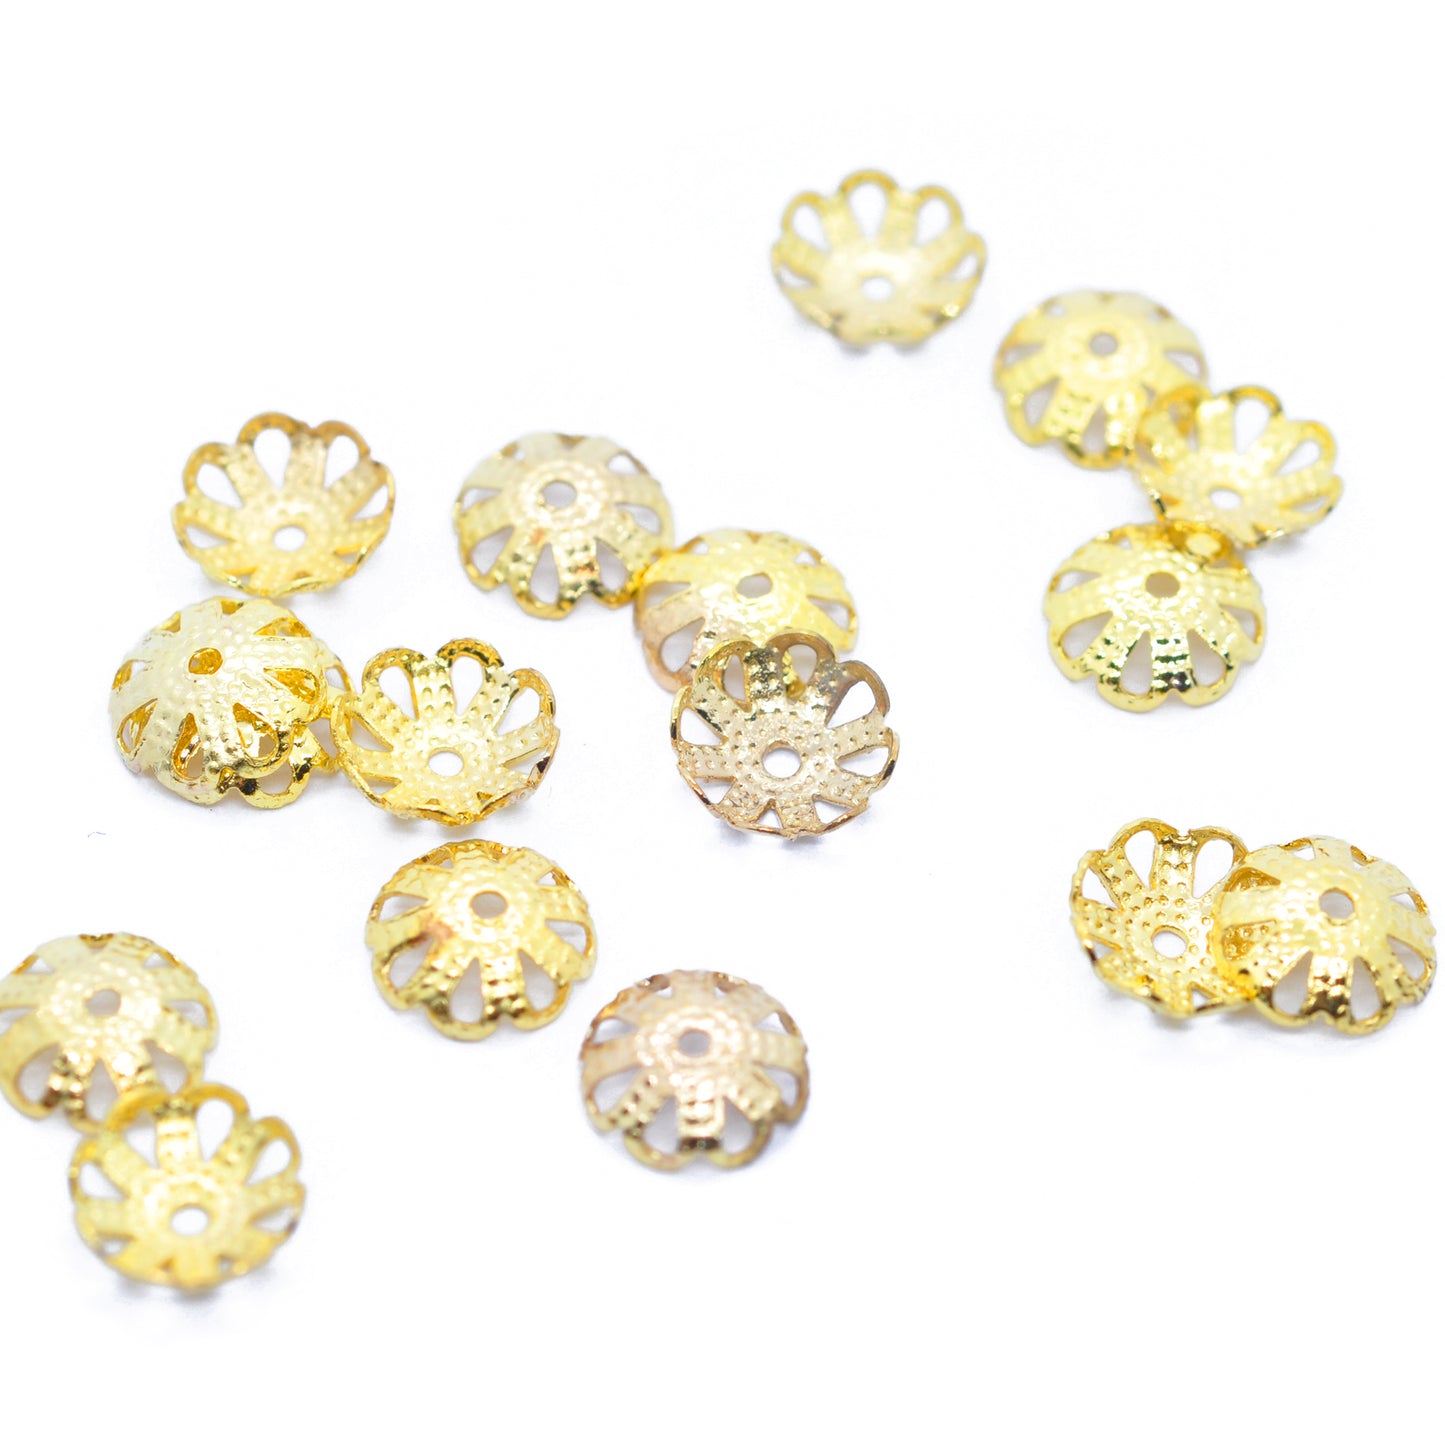 Filigree bead caps / gold-colored / 25 pcs. / Ø 7 mm